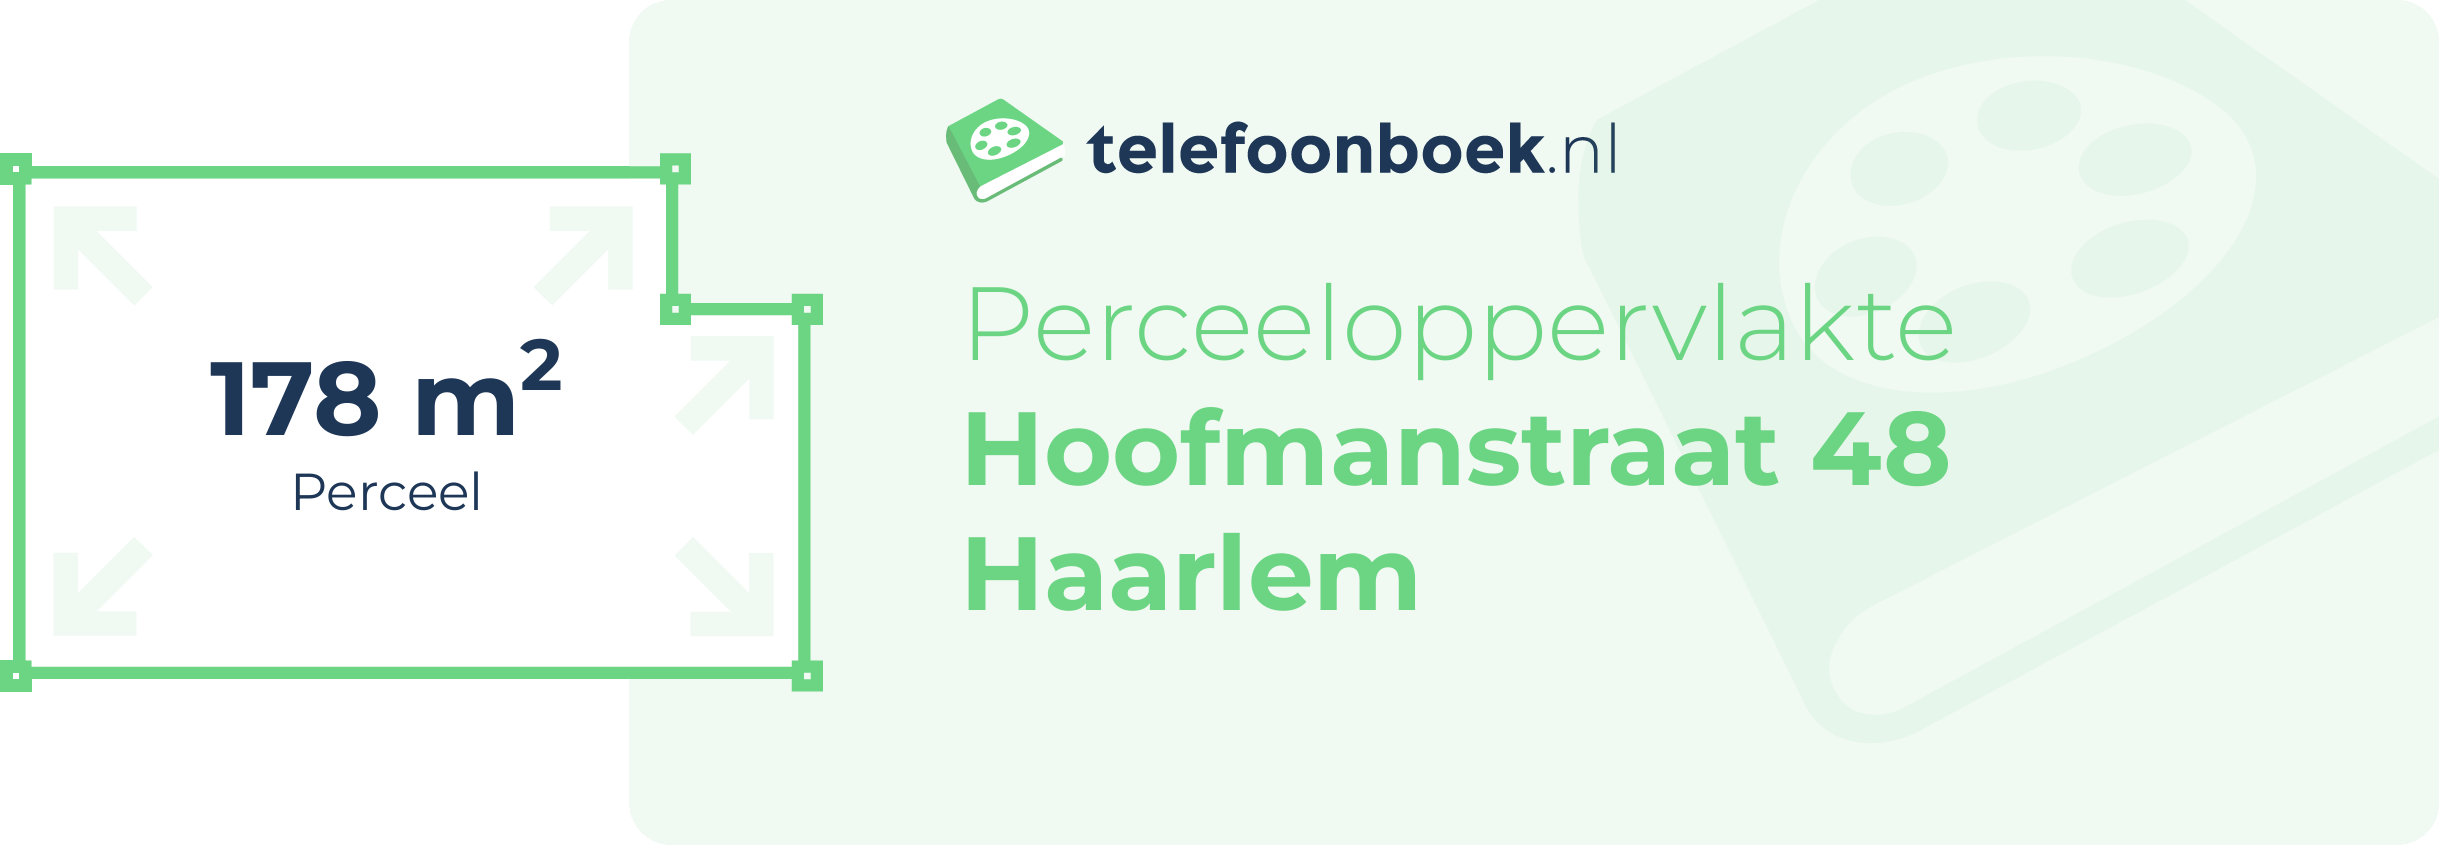 Perceeloppervlakte Hoofmanstraat 48 Haarlem